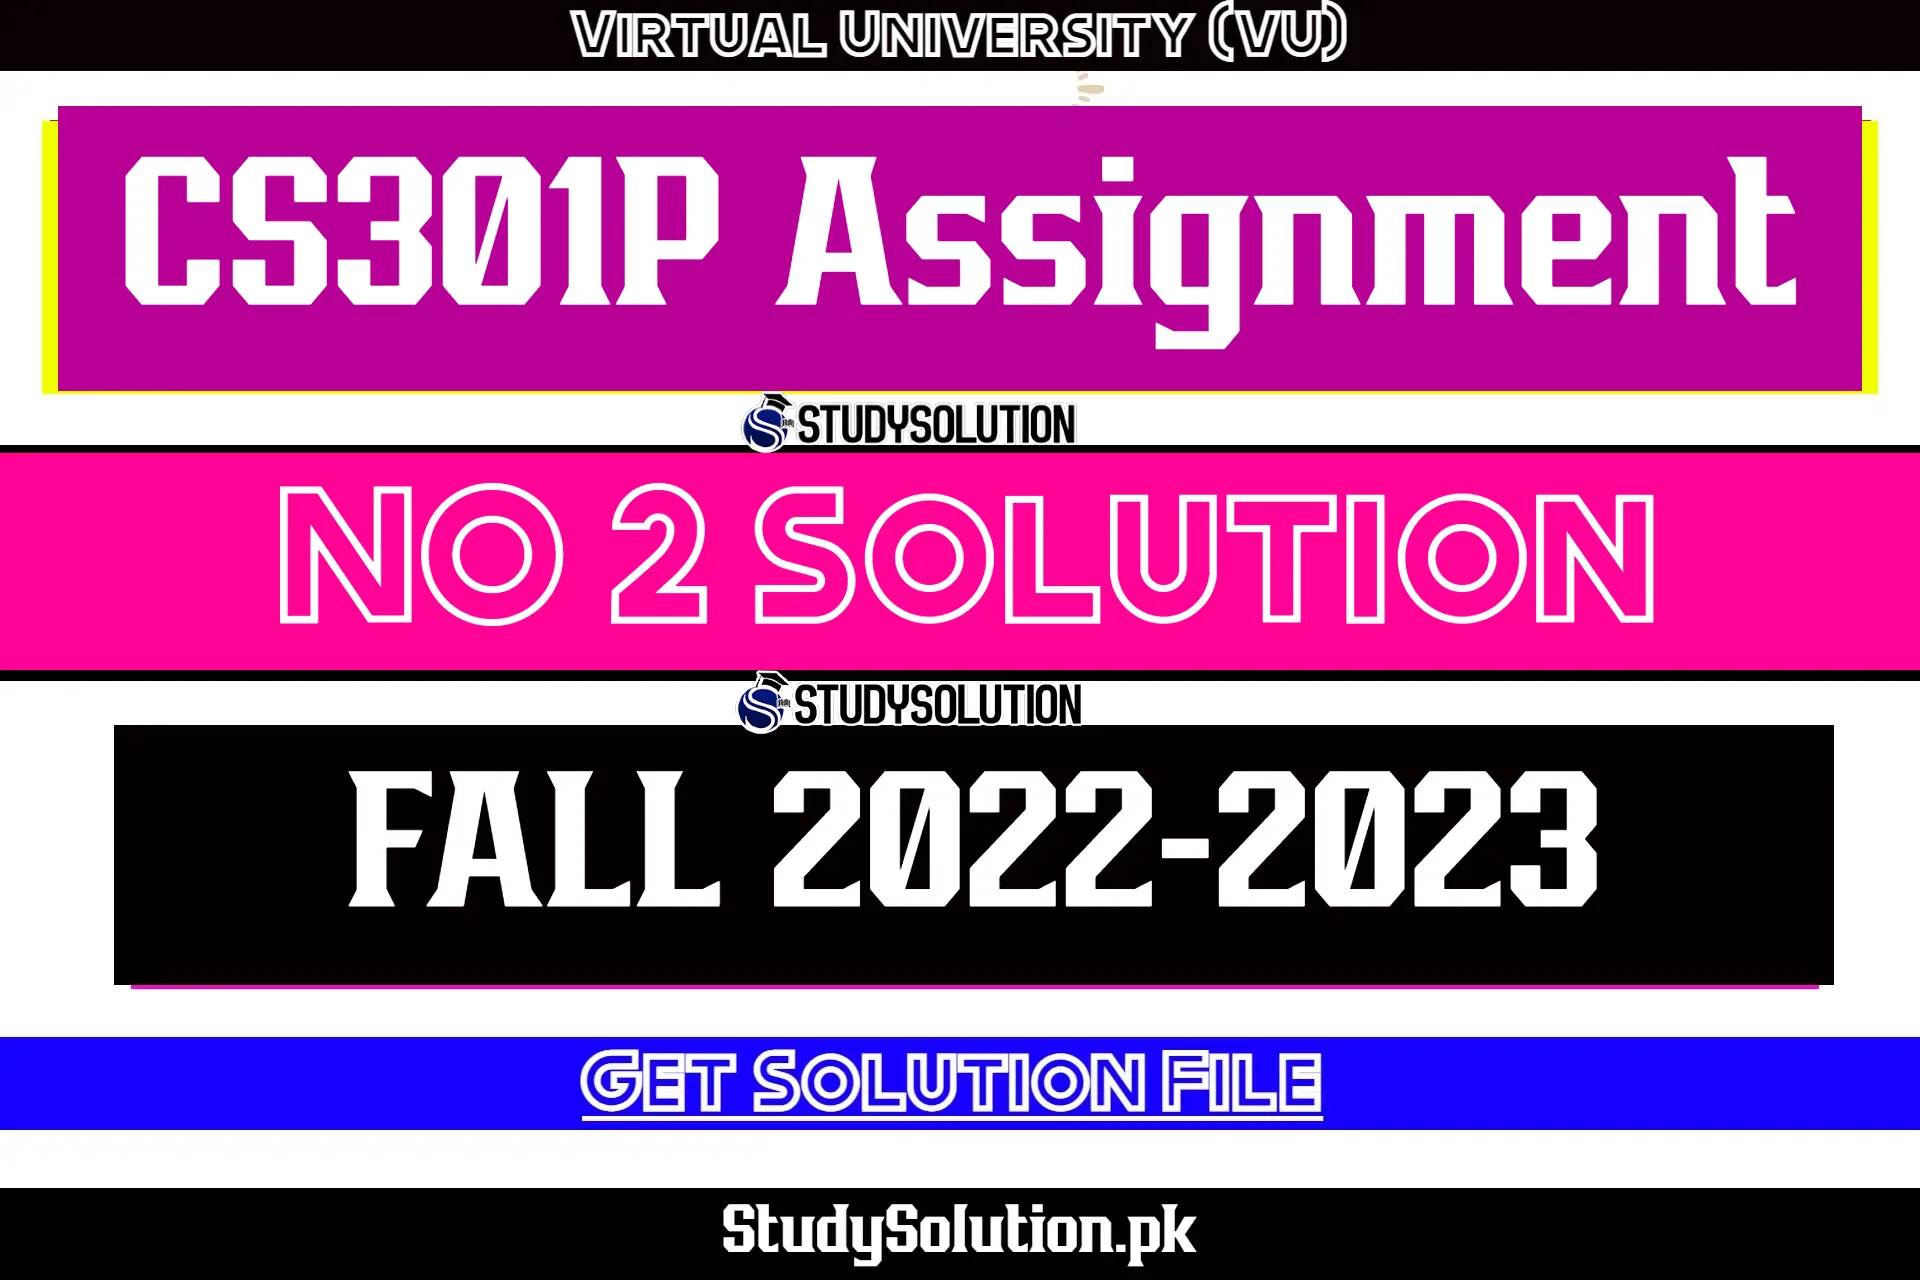 CS301P Assignment No 2 Solution Fall 2022